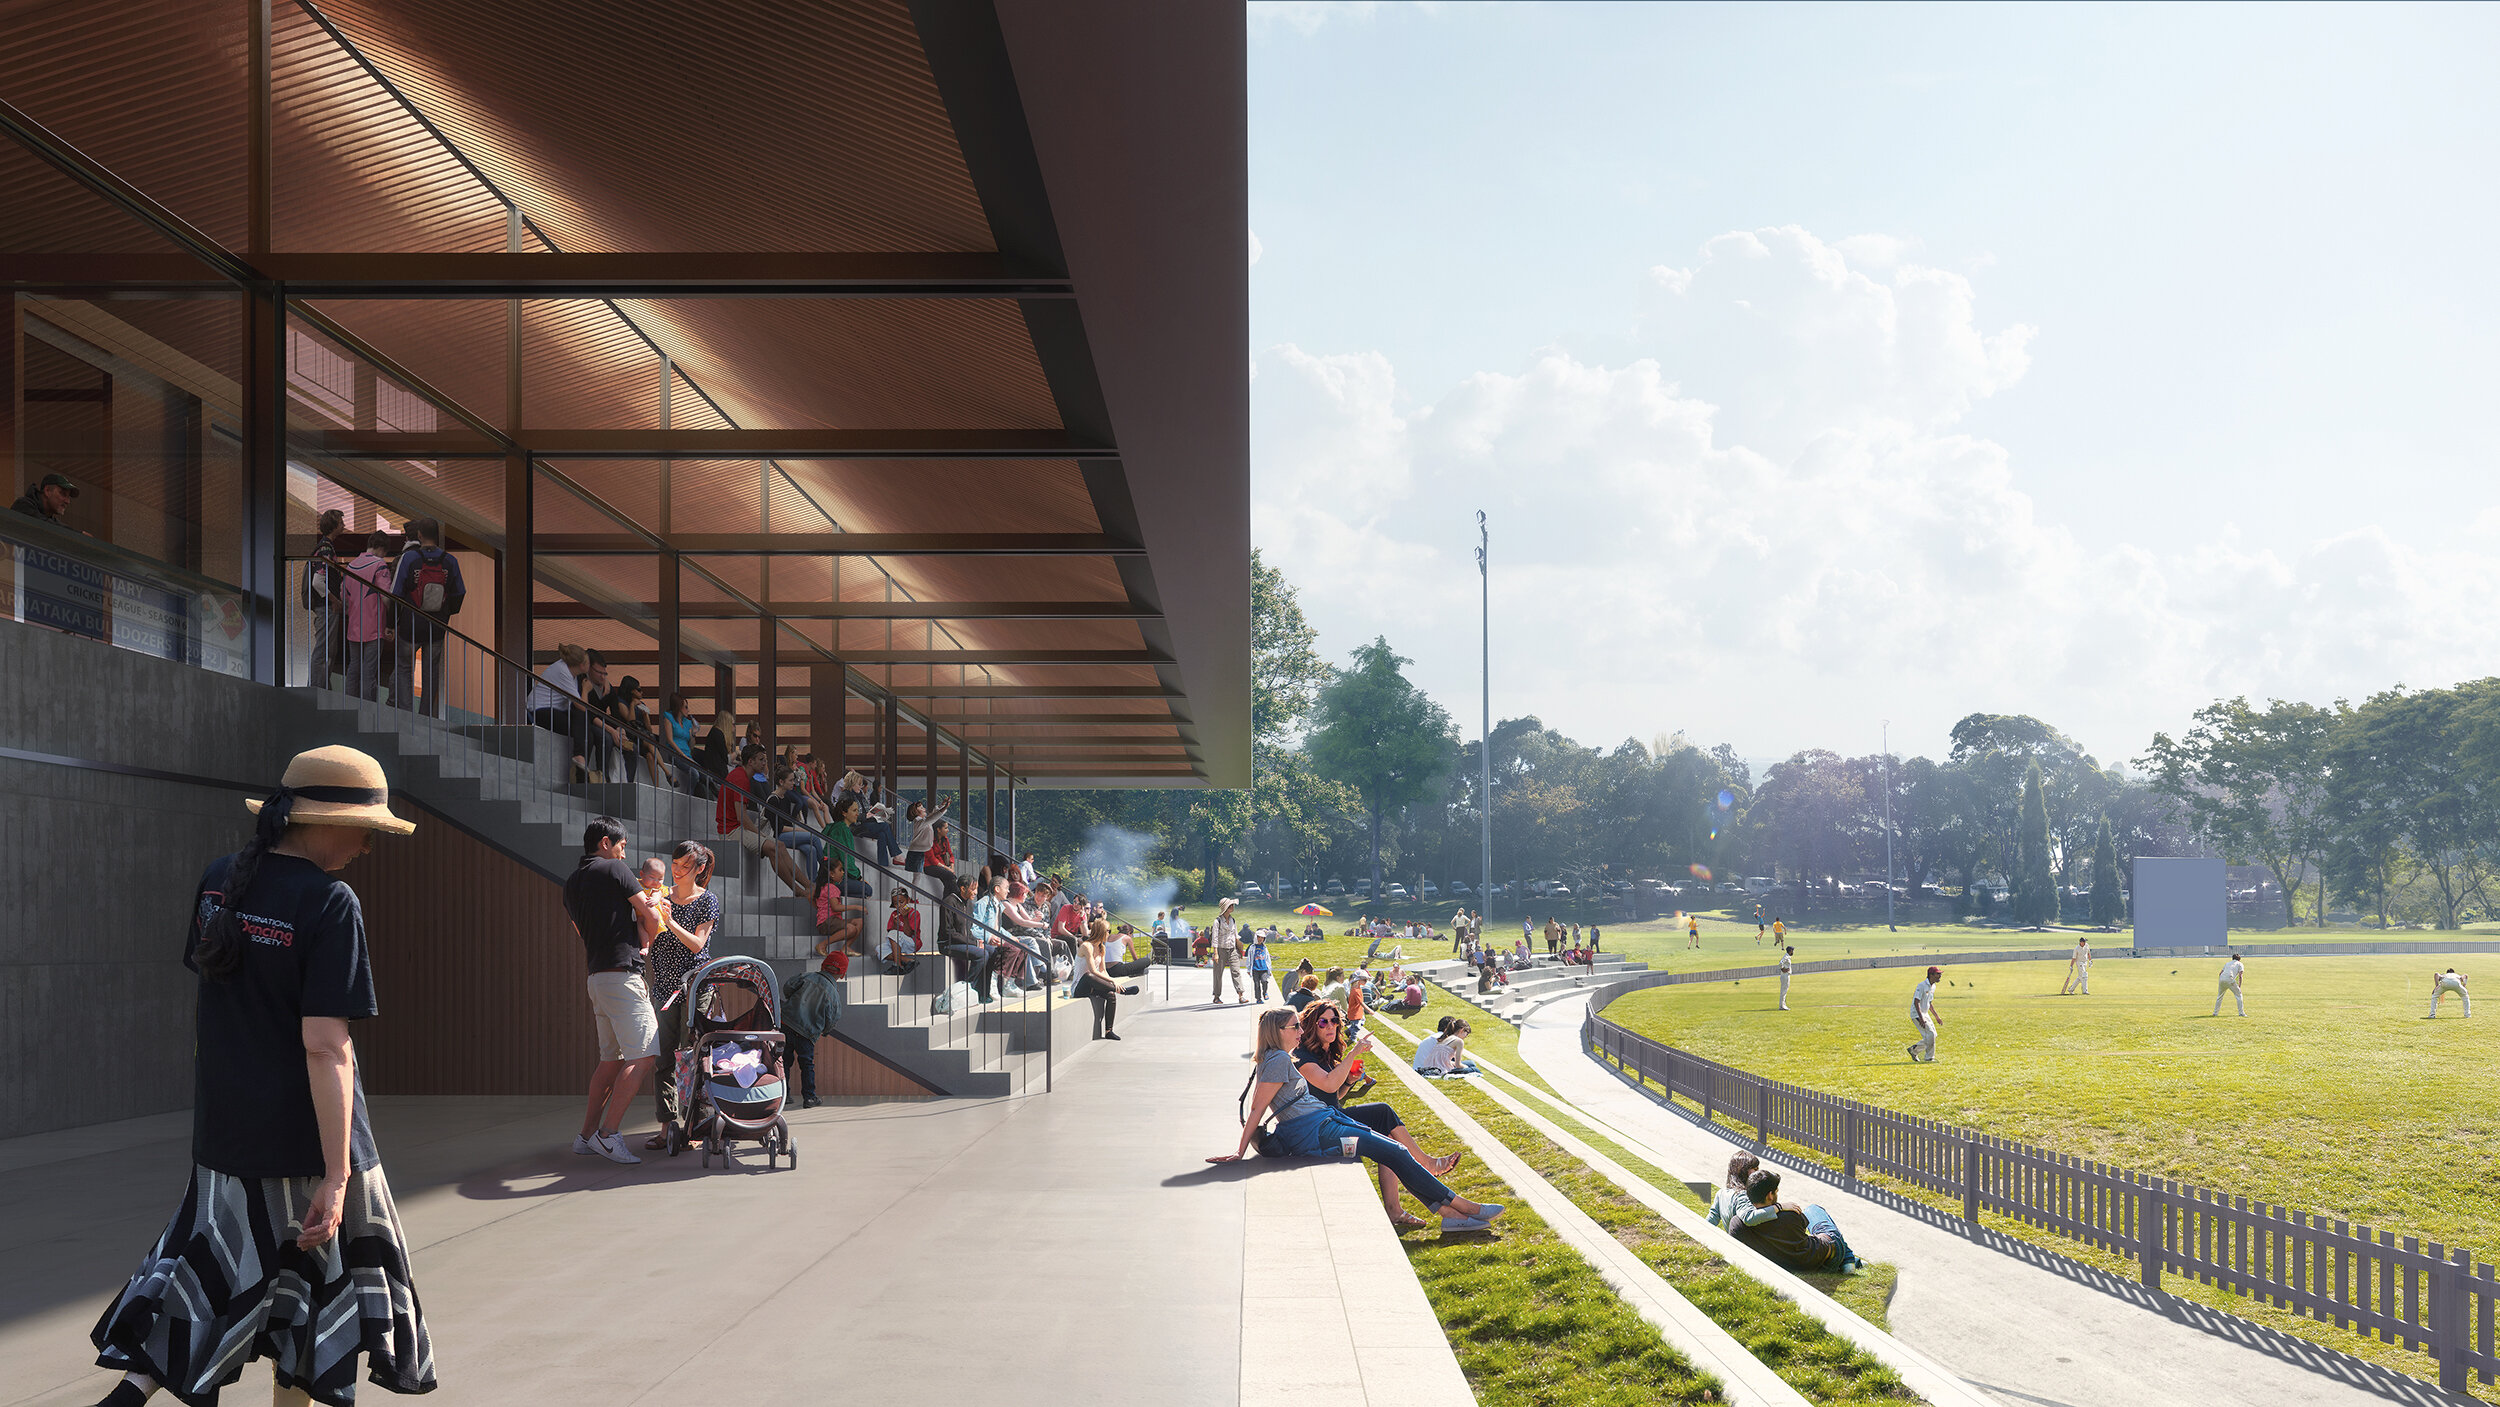 September 2019 - Allan Border Oval Pavilion receives planning approval